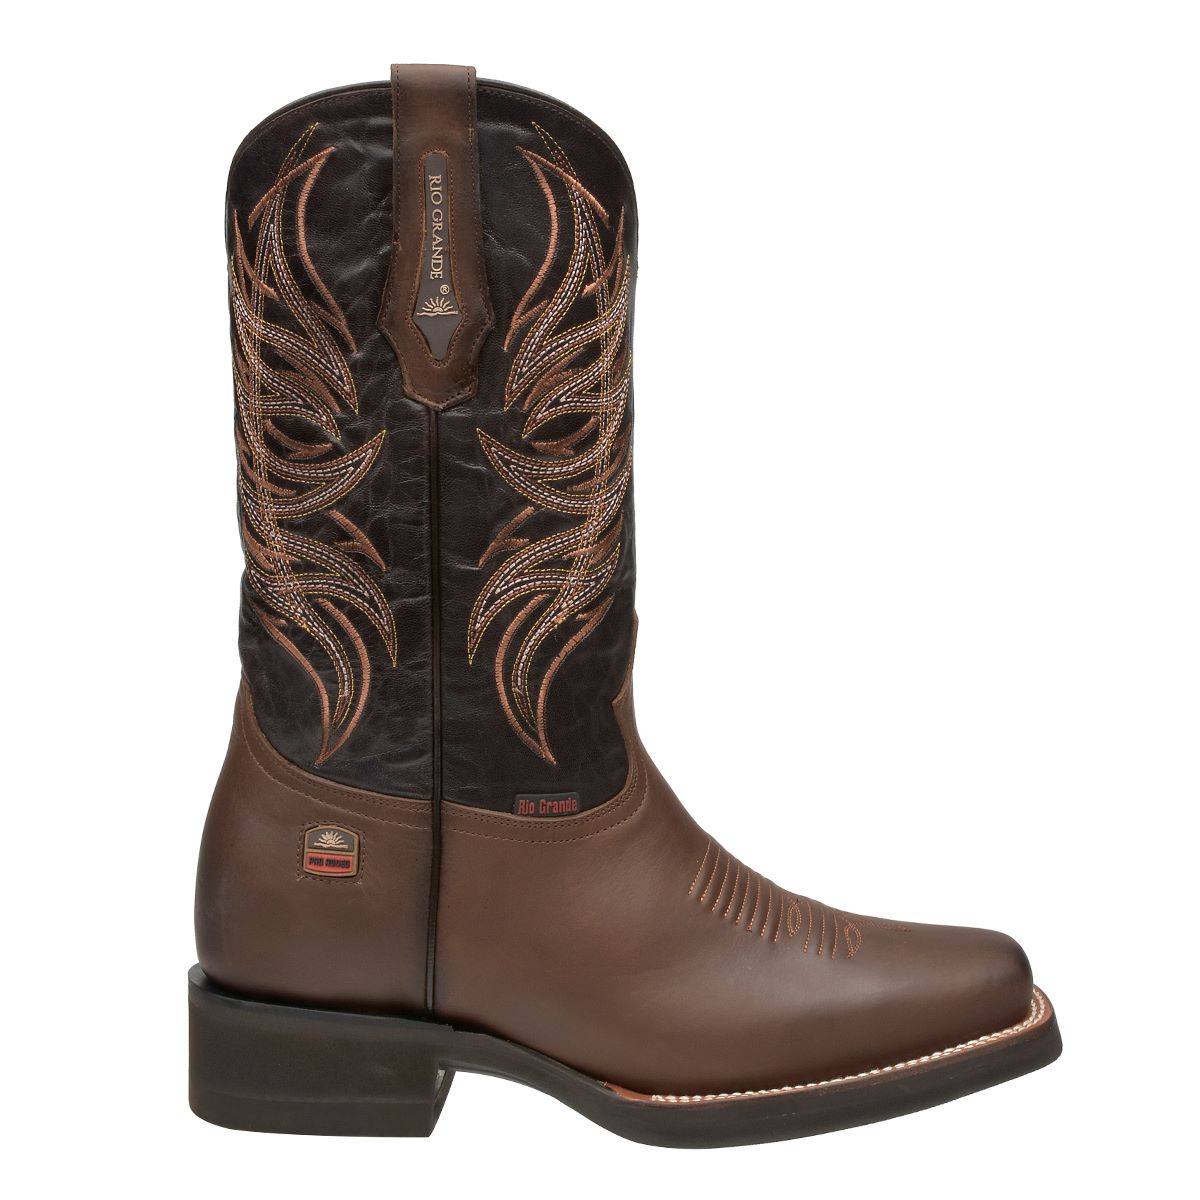 Rio Grande Men's Falcon Western Boots - Square Toe